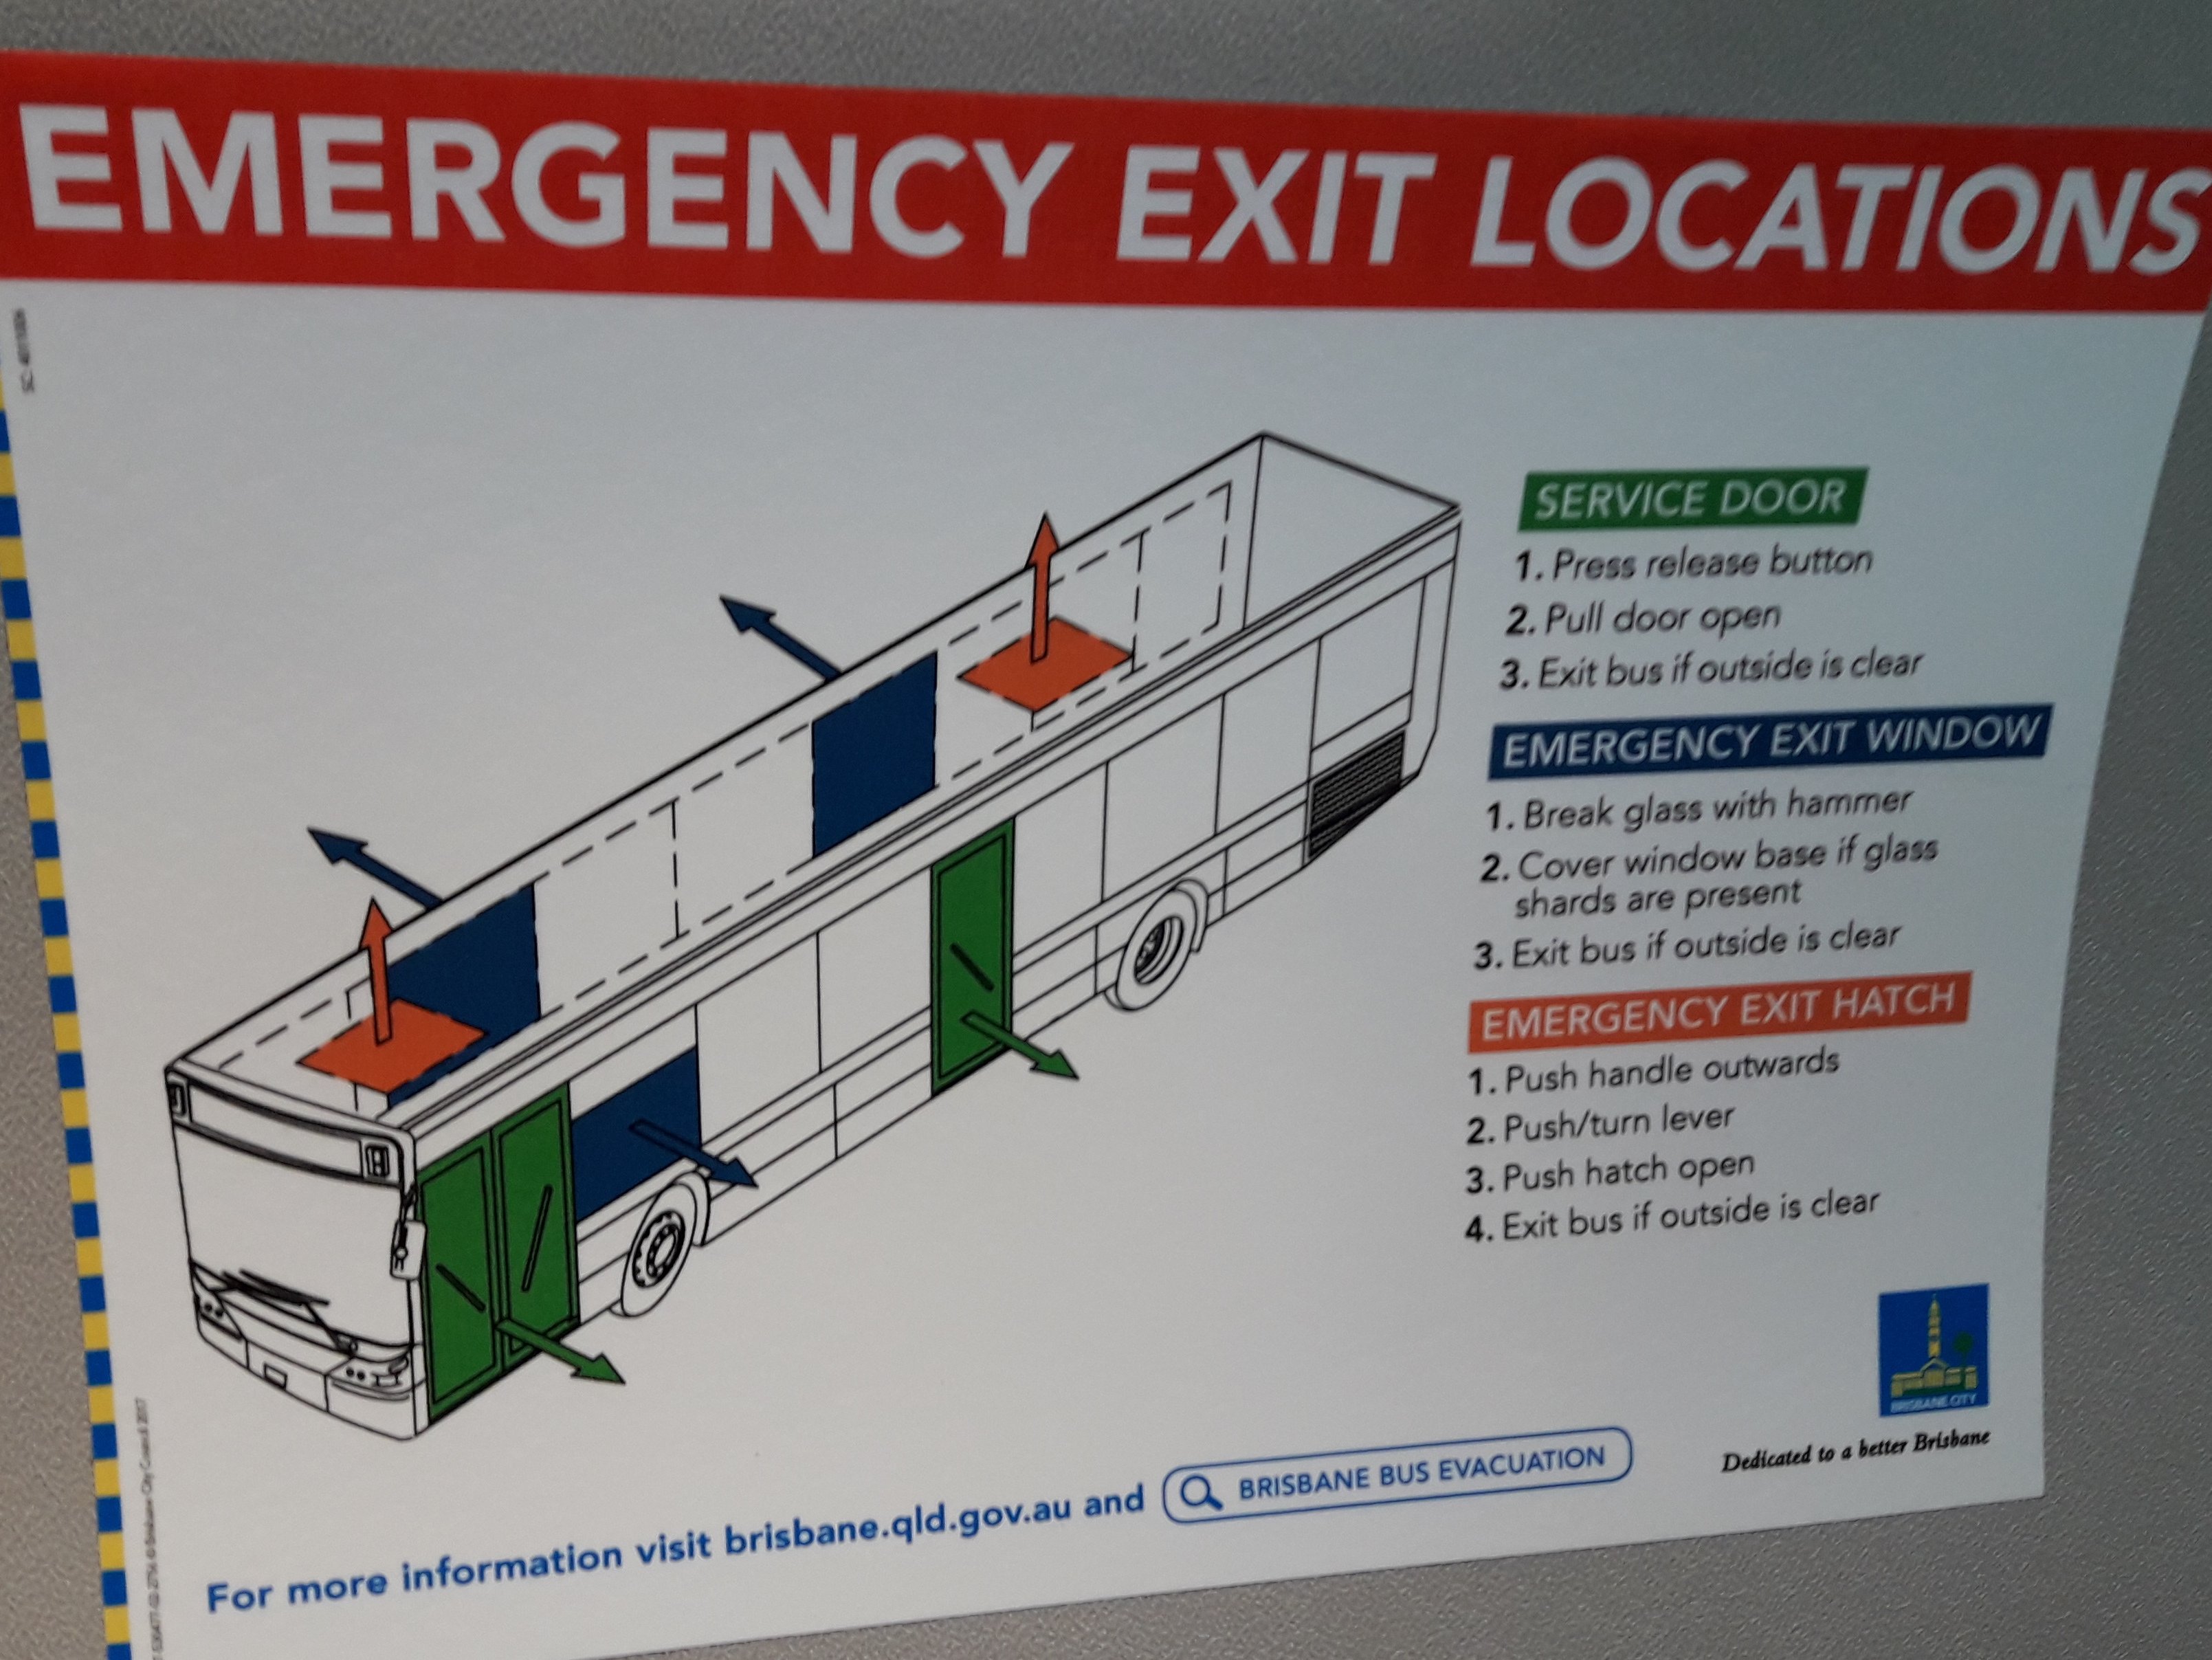 Diagrama de ubicación salidas de emergencia publicado al interior del bus